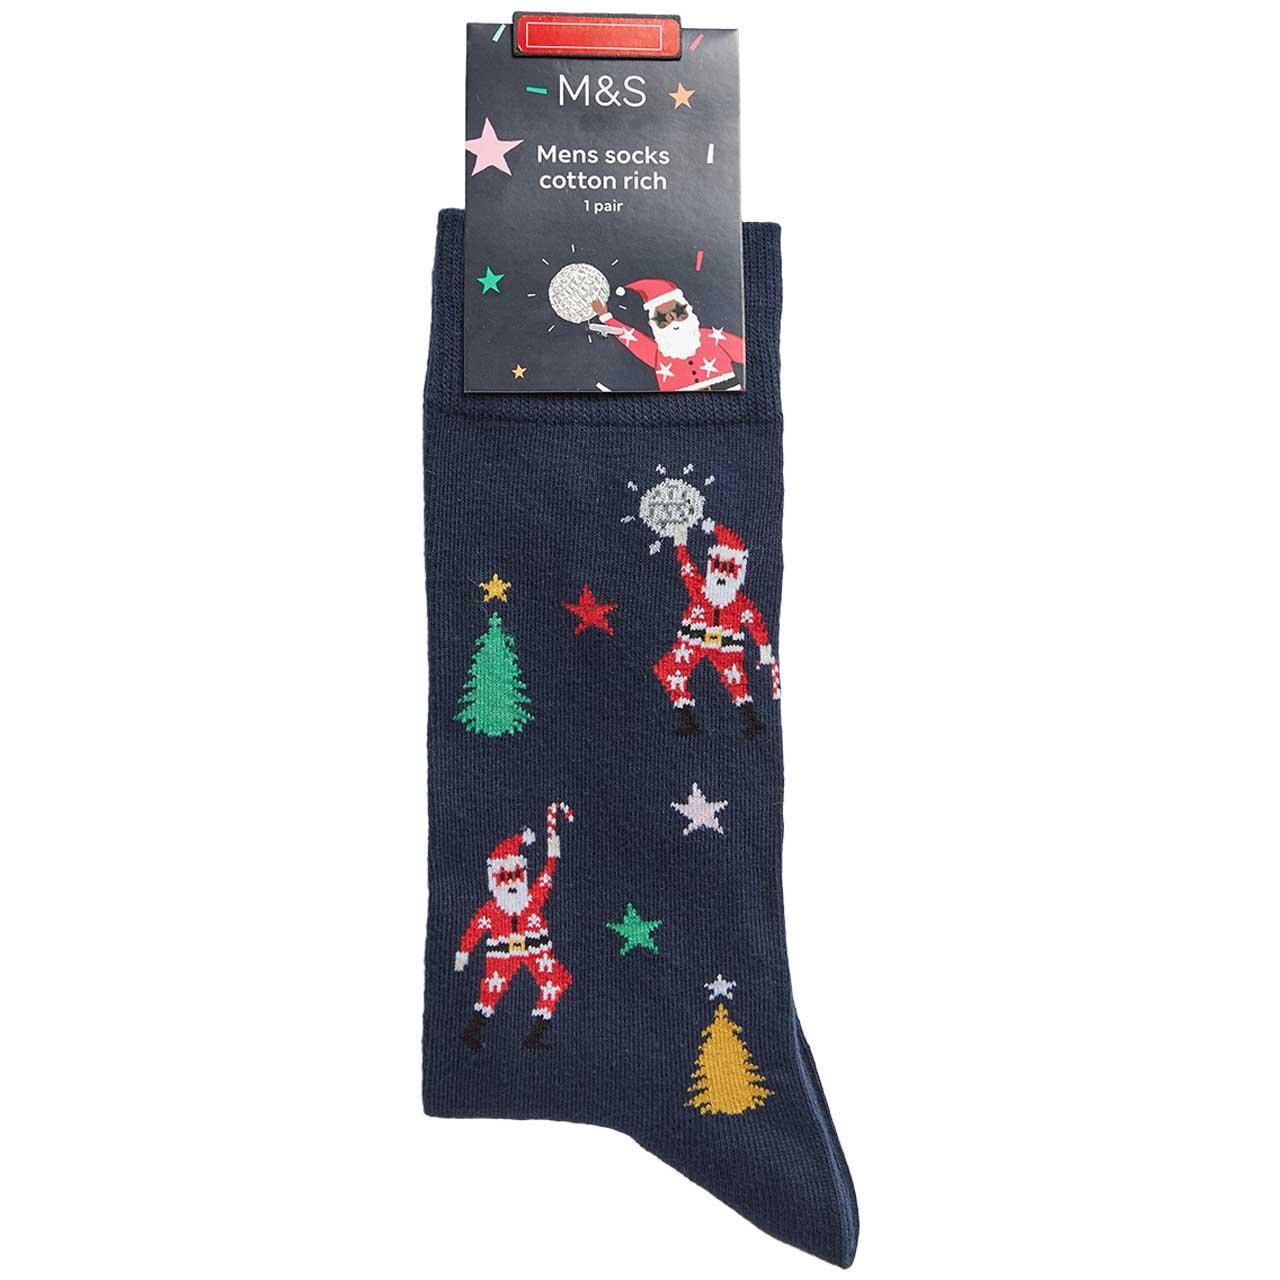 Santa socks Secret Santa ideas under £5